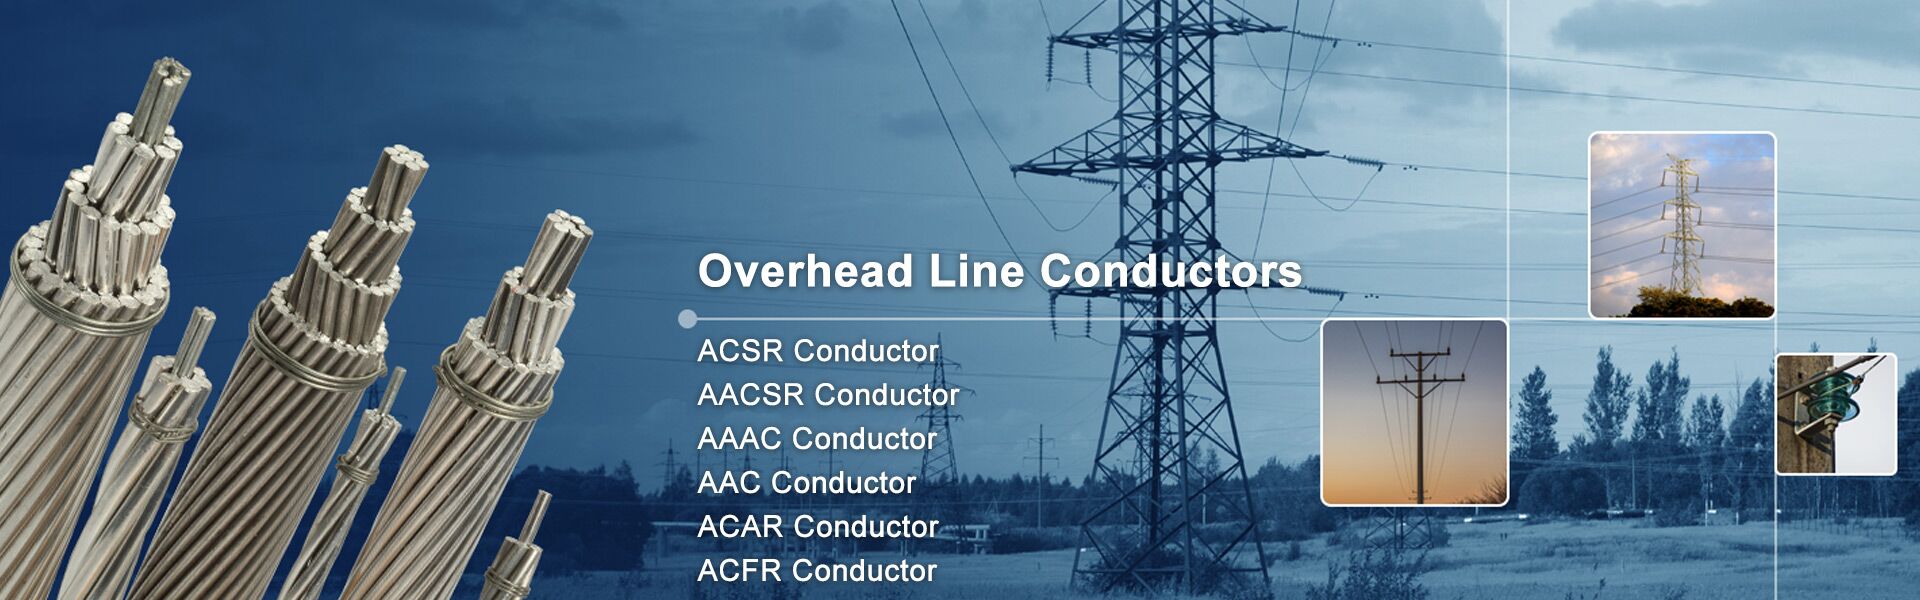 ACSR/ AAAC Conductor